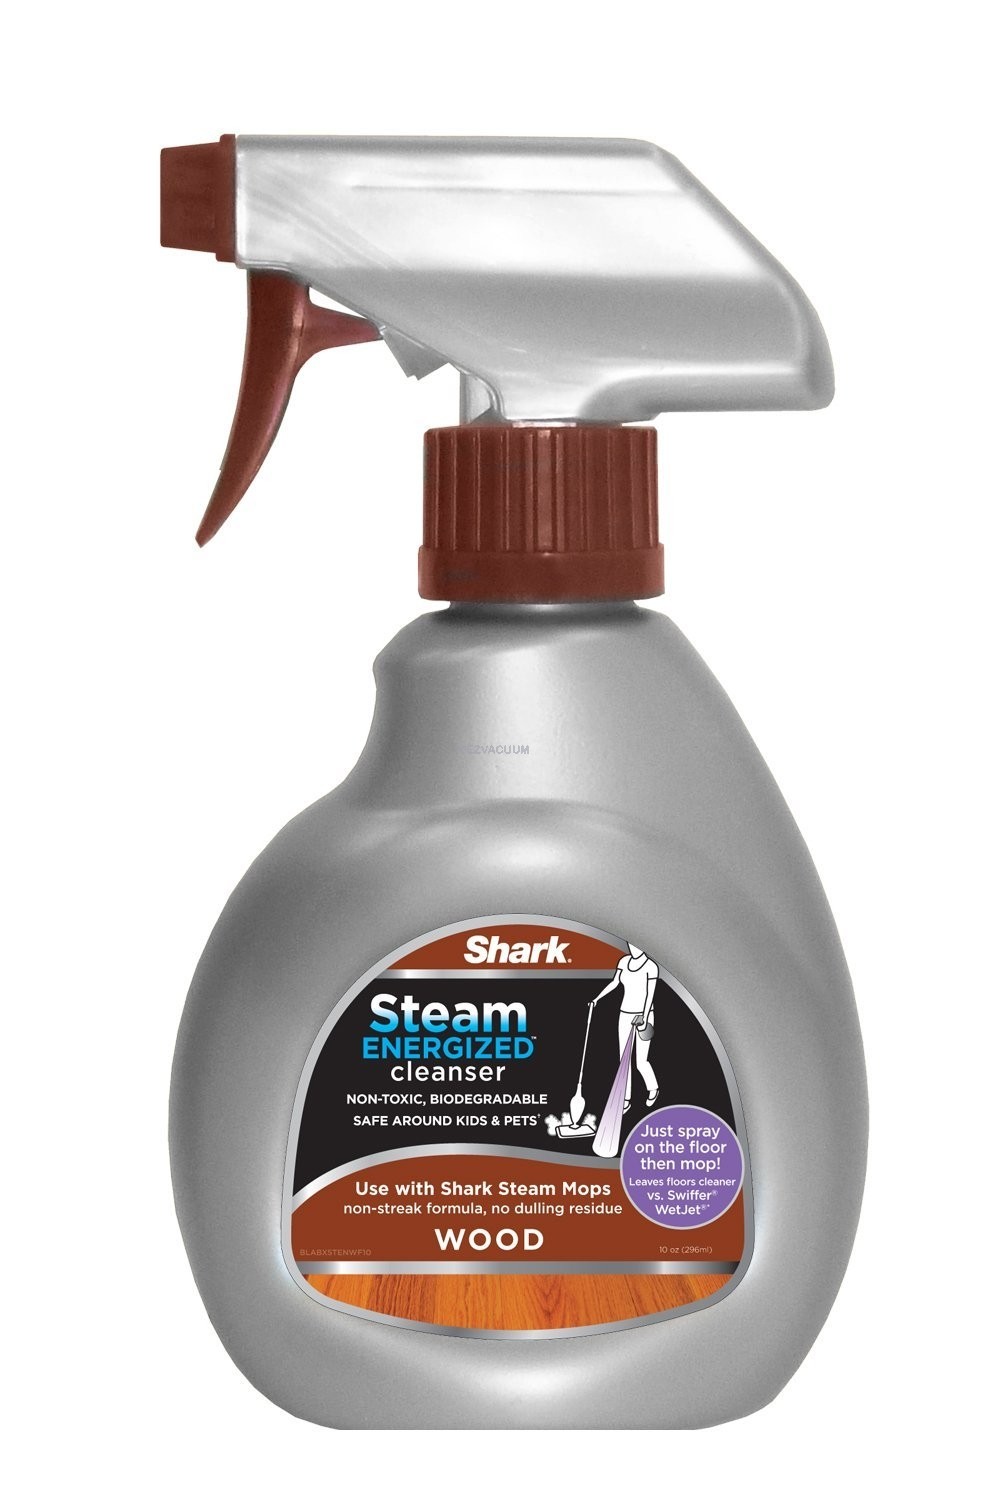 Shark Steam Energized Cleanser Spray, Is The Shark Steamer Safe For Hardwood Floors